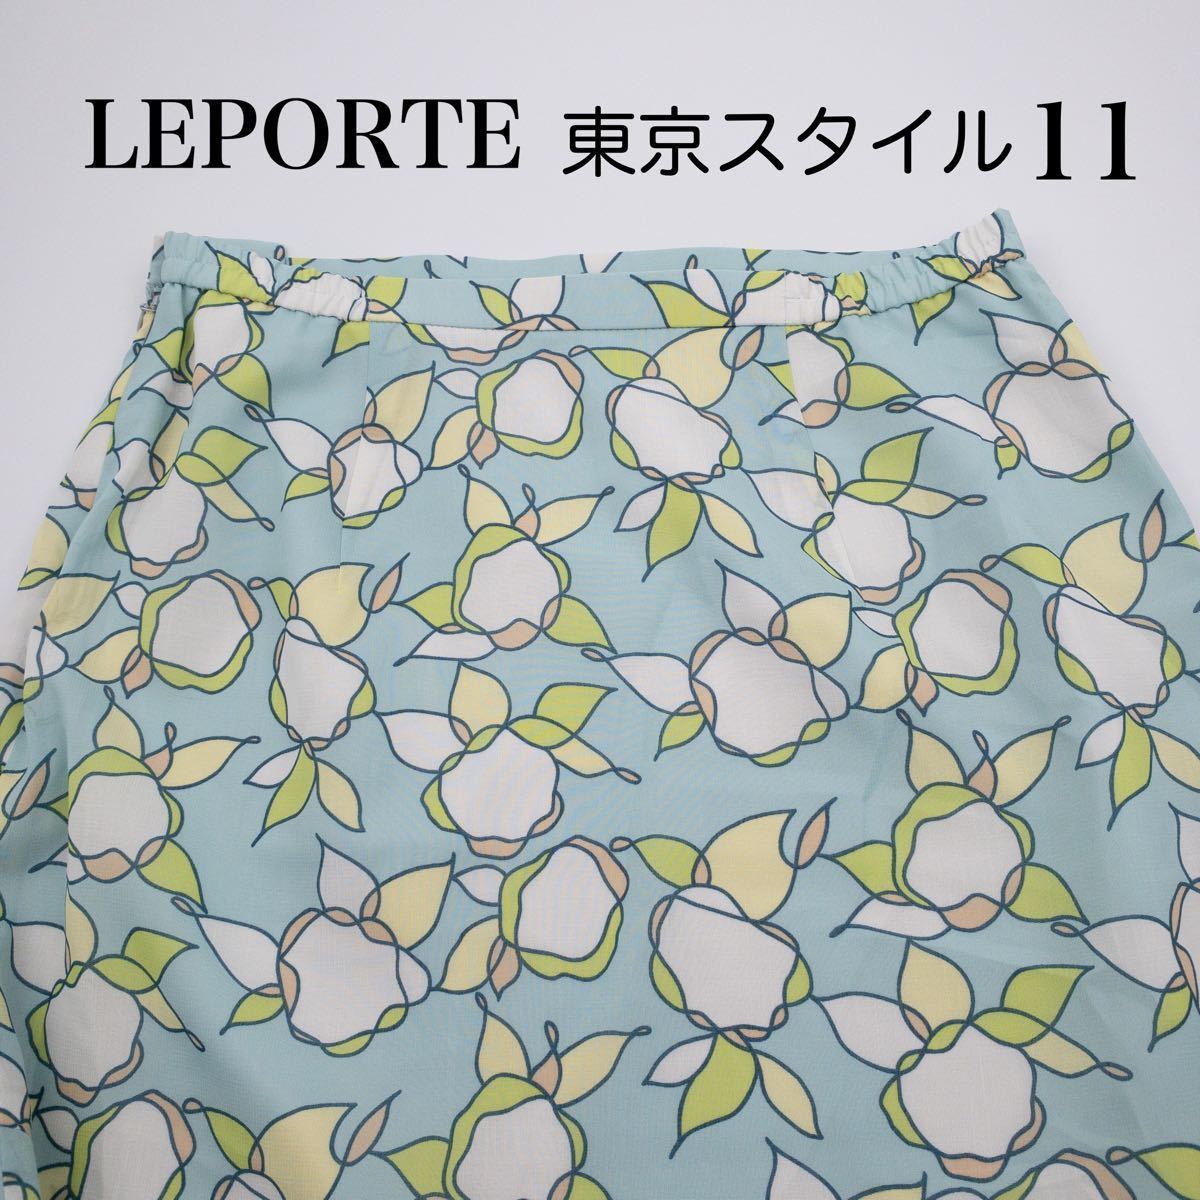 【美品】東京スタイル LEPORTE ロングスカート 日本製 M L レディース スカート 春